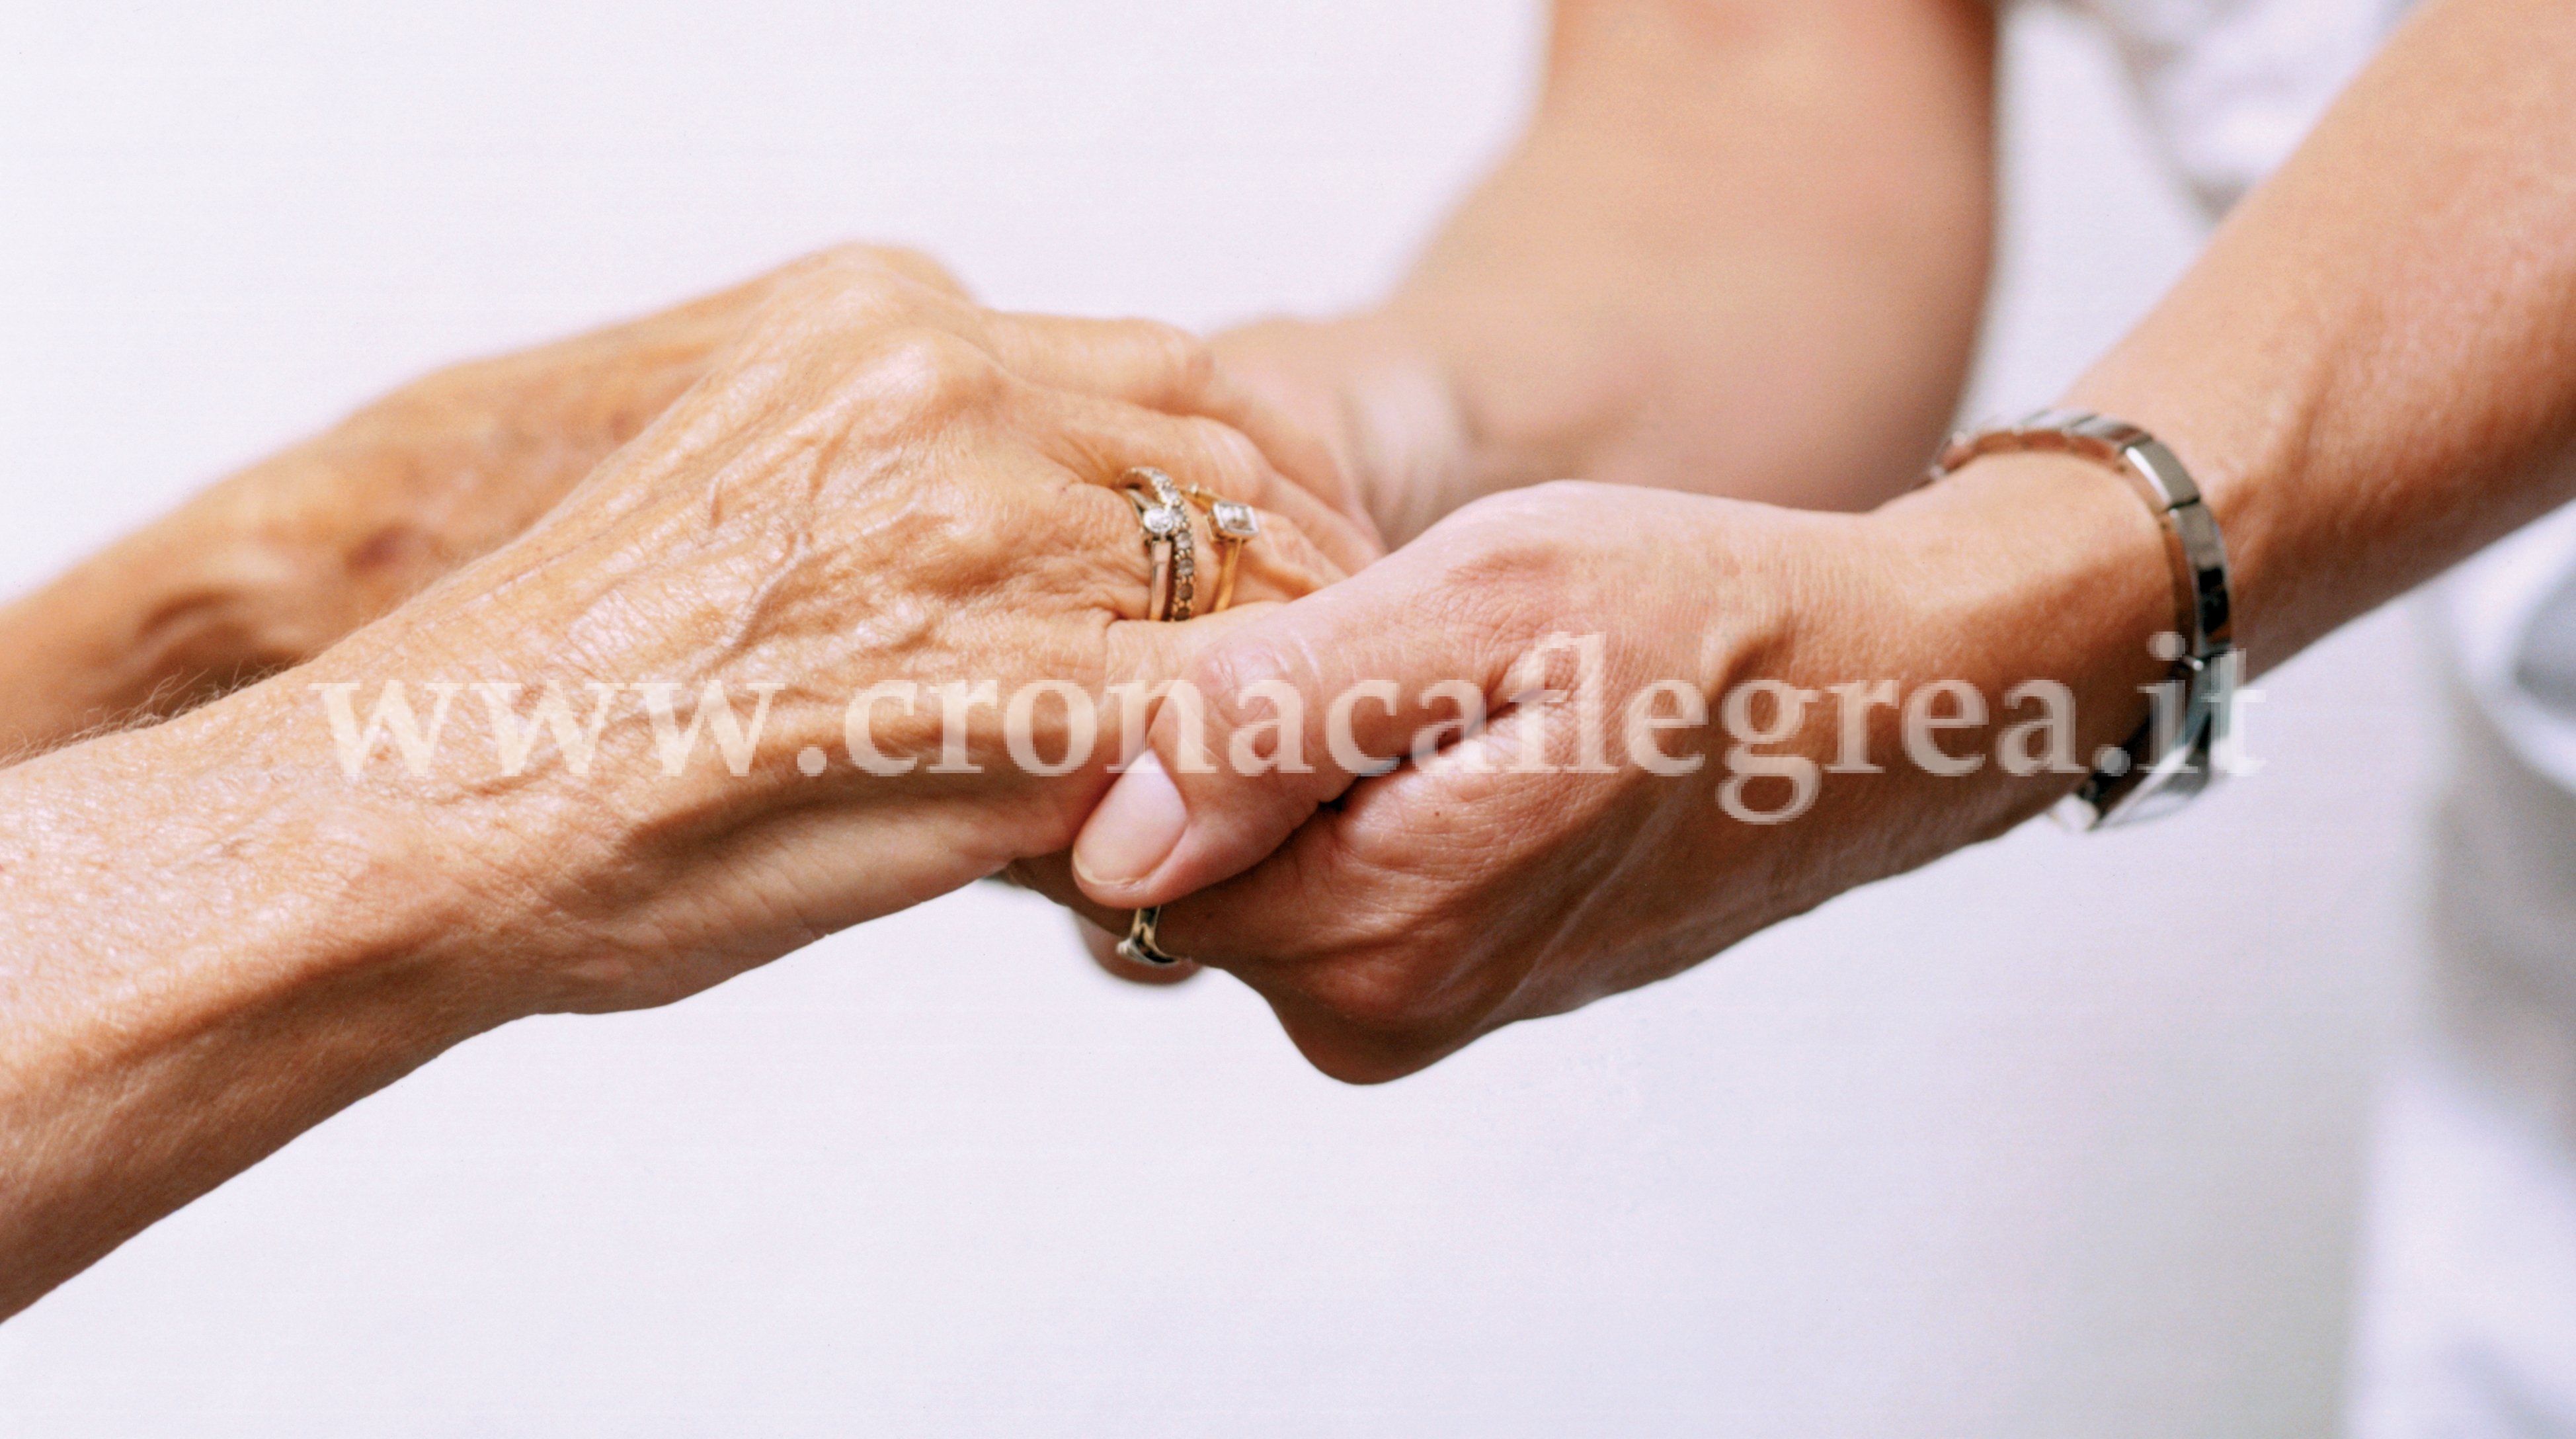 CAMPI FLEGREI/ In tre comuni al via il bando per assistenza domiciliare agli anziani